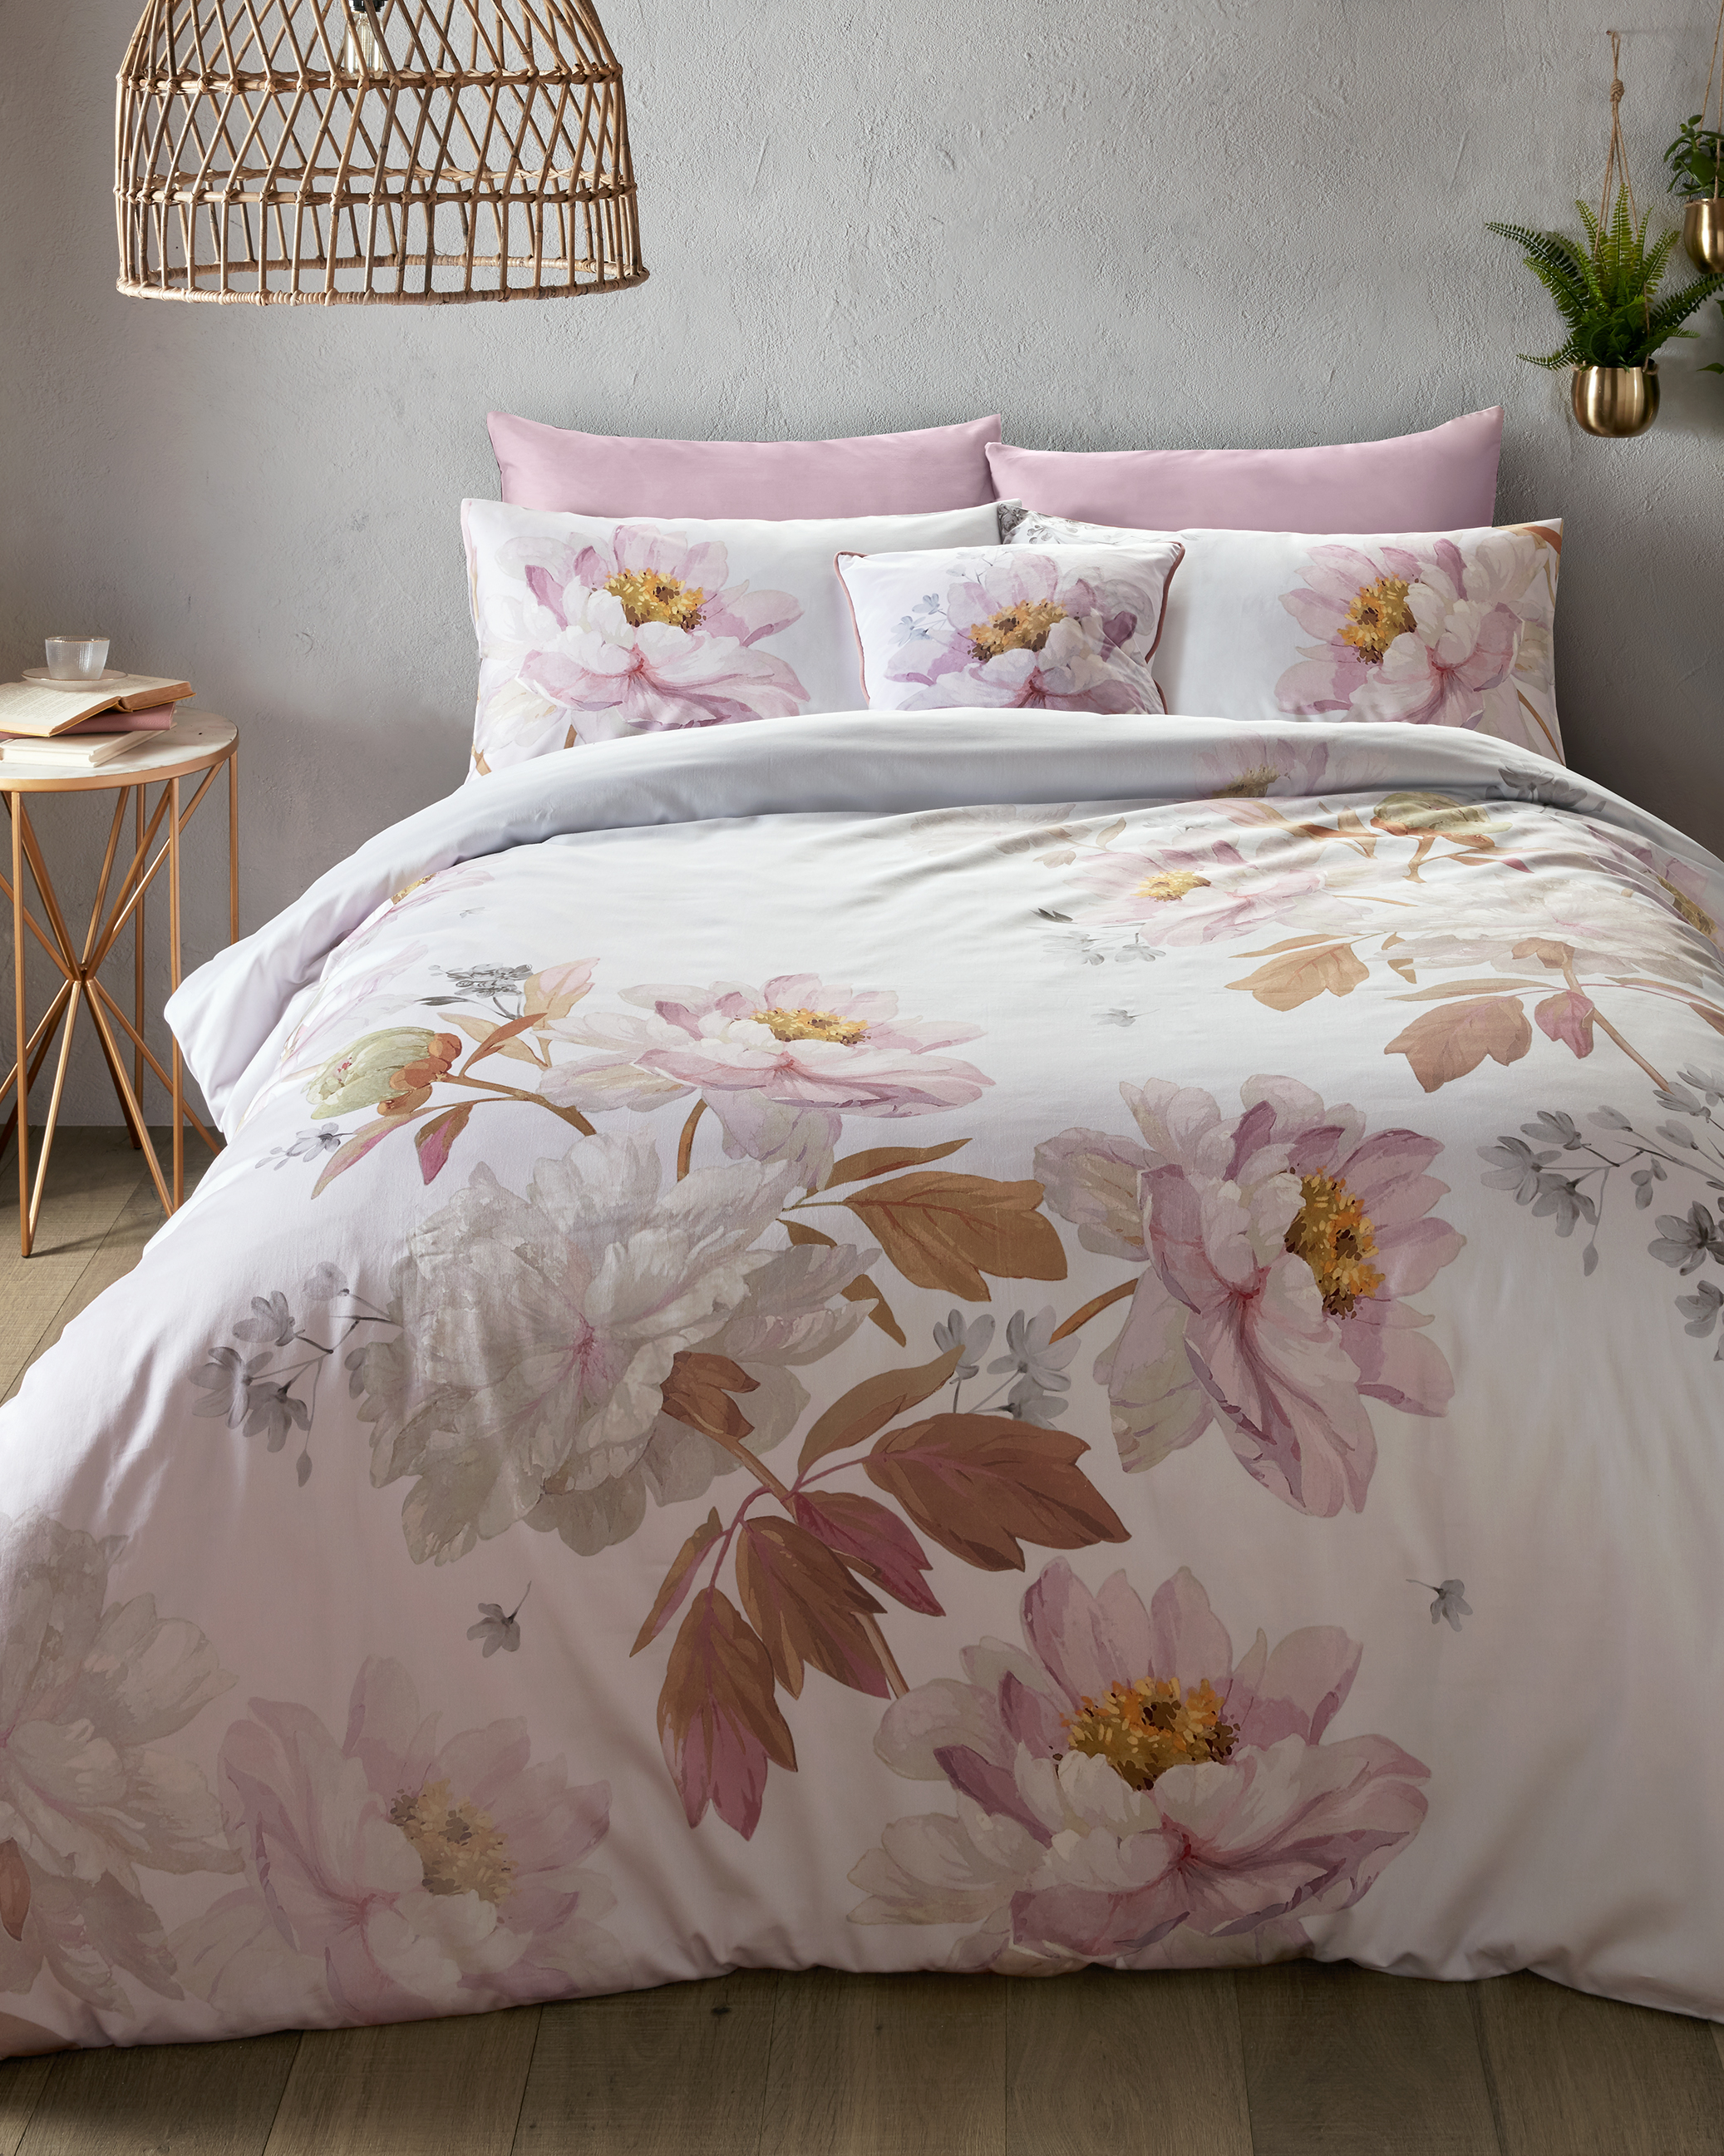 Butterscotch King Size Cotton Duvet Cover Light Pink Bed Linen